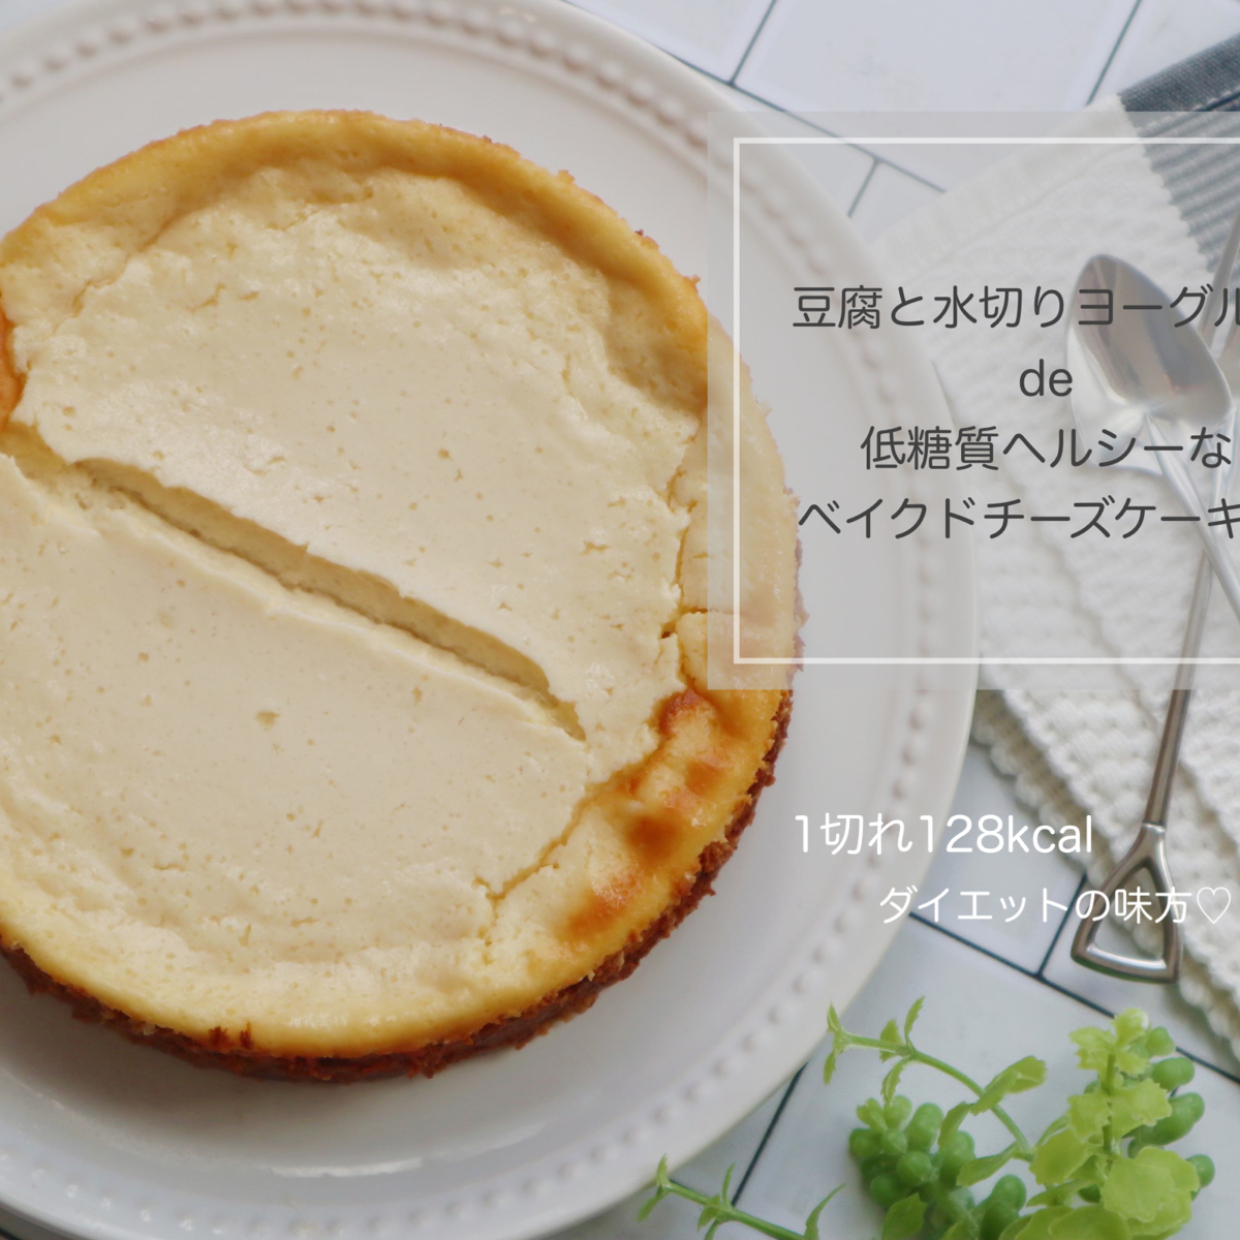  「豆腐」と「ヨーグルト」でつくる“かんたん低糖質ベイクドチーズケーキ”レシピ 